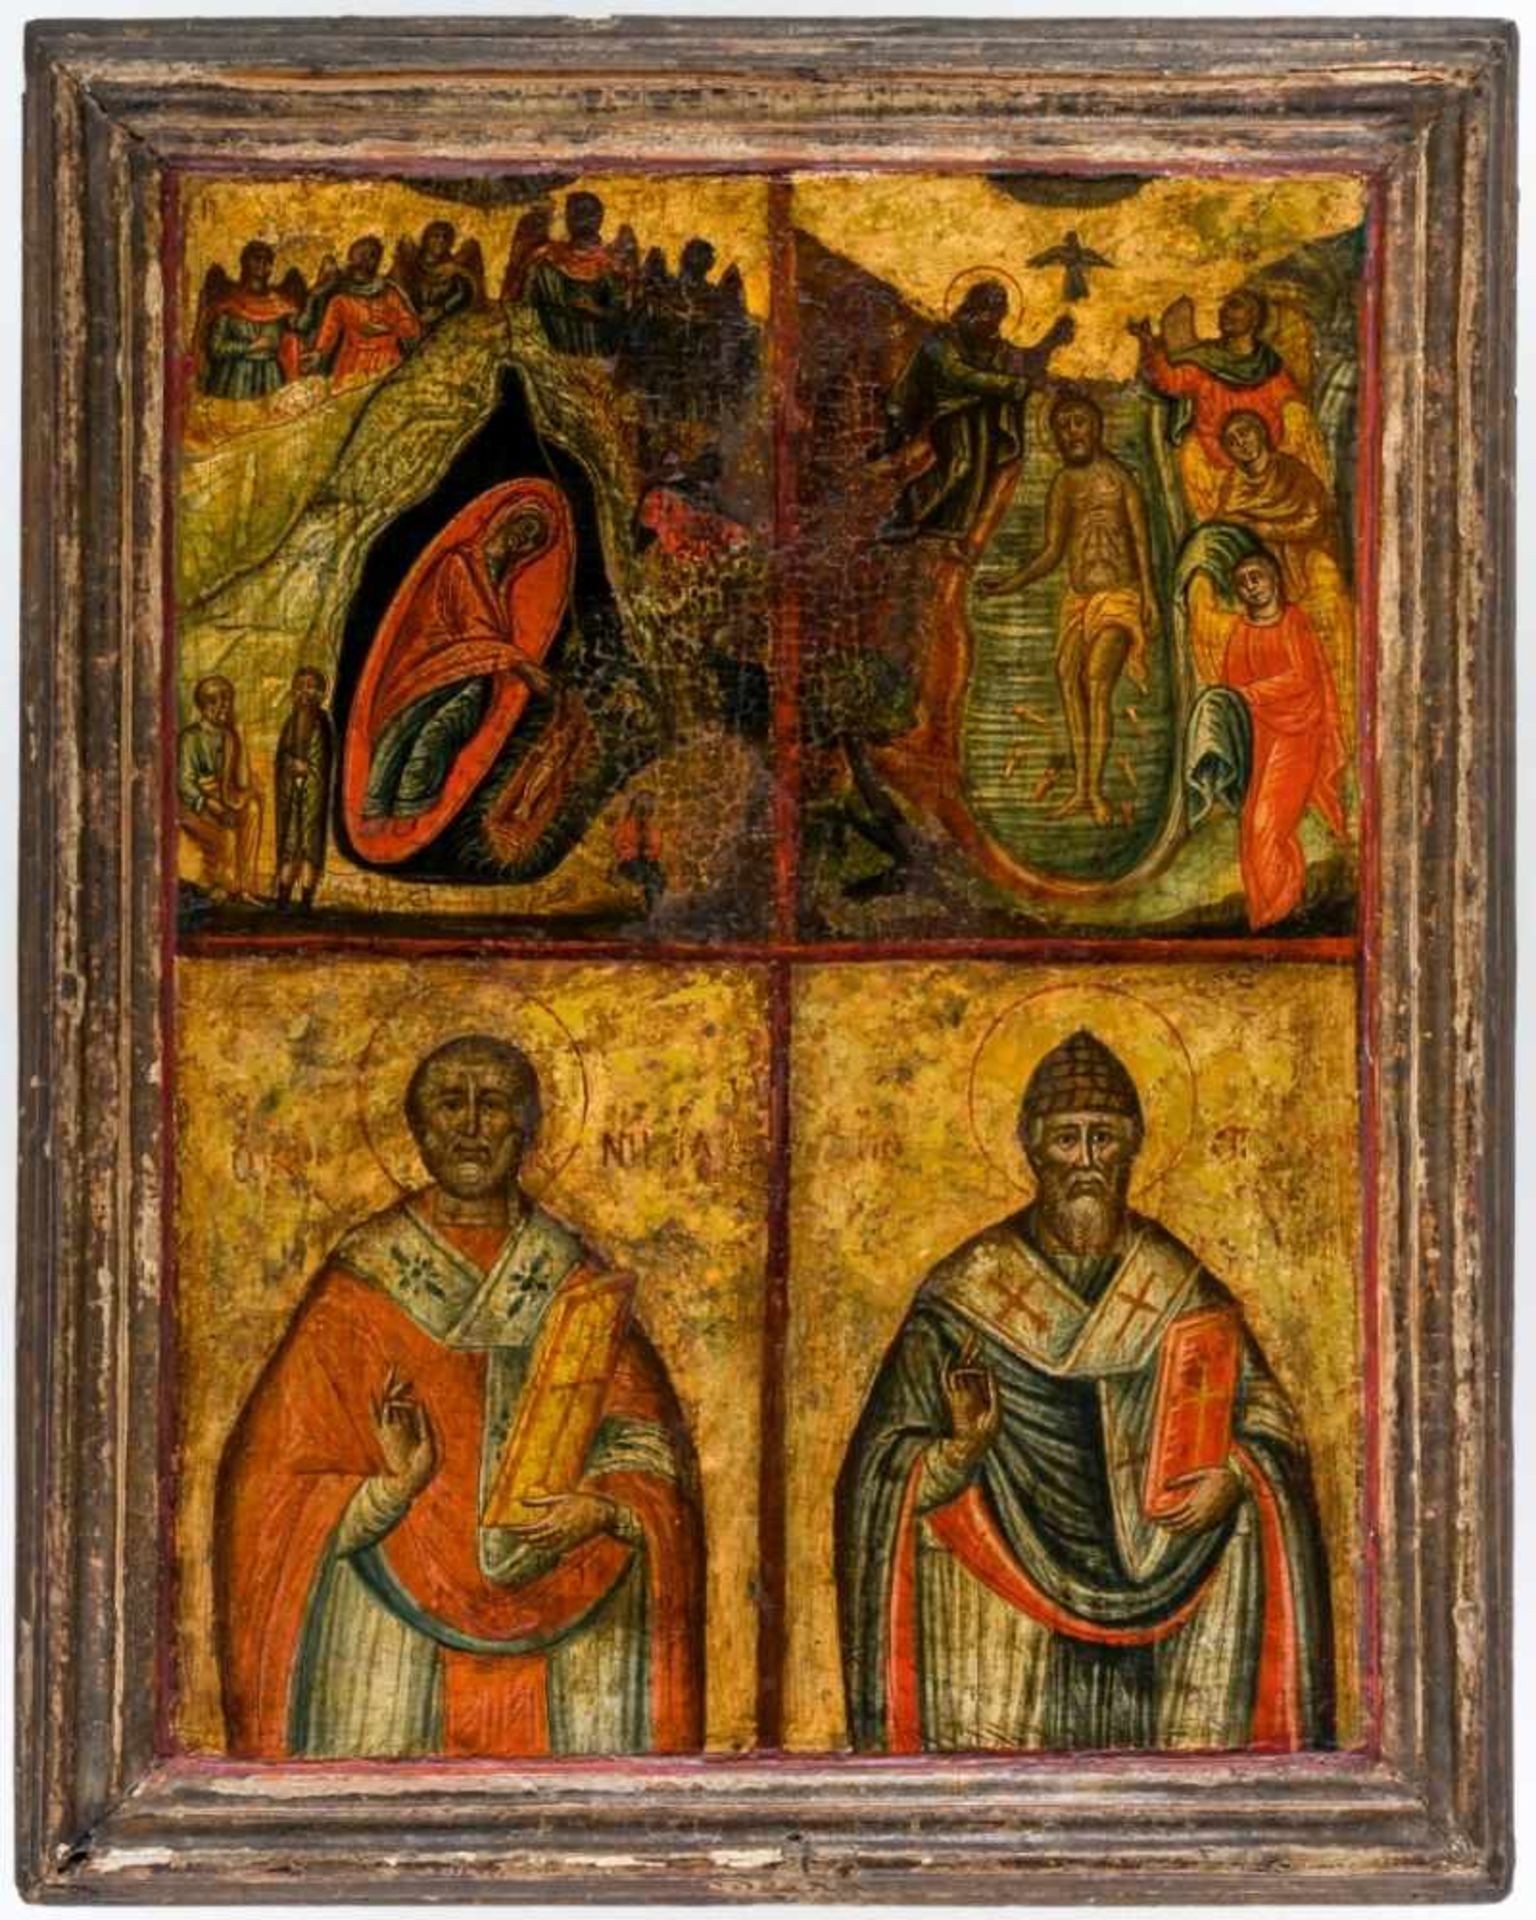 Hl. Spyridon von Korfu, Hl. Nikolaus, Geburt & Taufe Jesu Grosse griechische Ikone, 18. Jh. 50 x